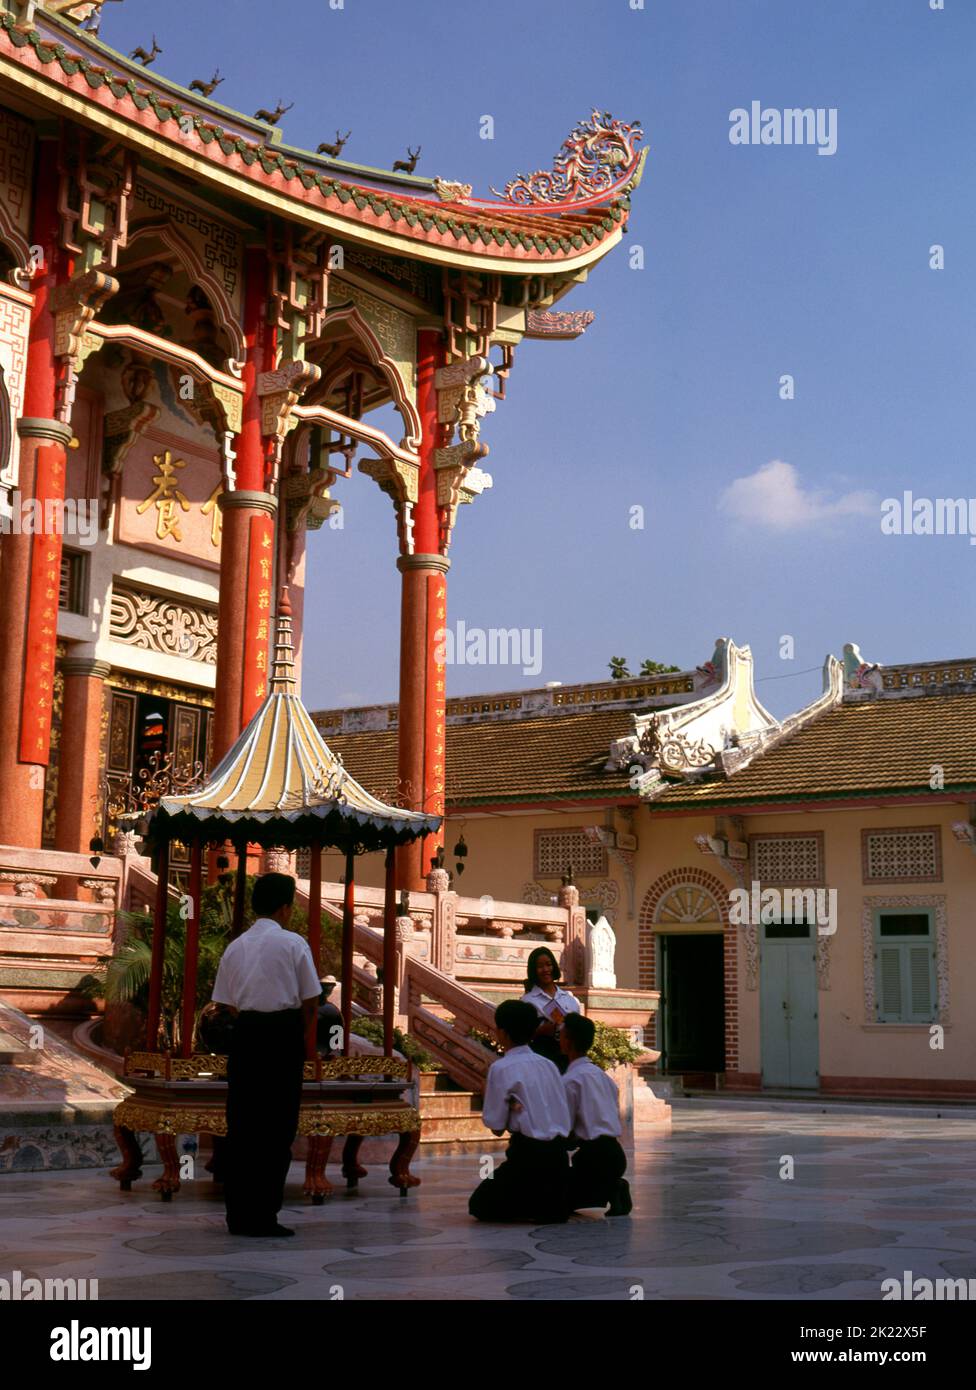 Thaïlande: Le principal viharn (salle de réunion), Wat Pho Maen Khunaram, Bangkok. Wat Pho Maen Khunaram est un temple bouddhiste Mahayana construit en 1959. Il mélange les styles architecturaux thaïlandais, chinois et tibétain. Banque D'Images